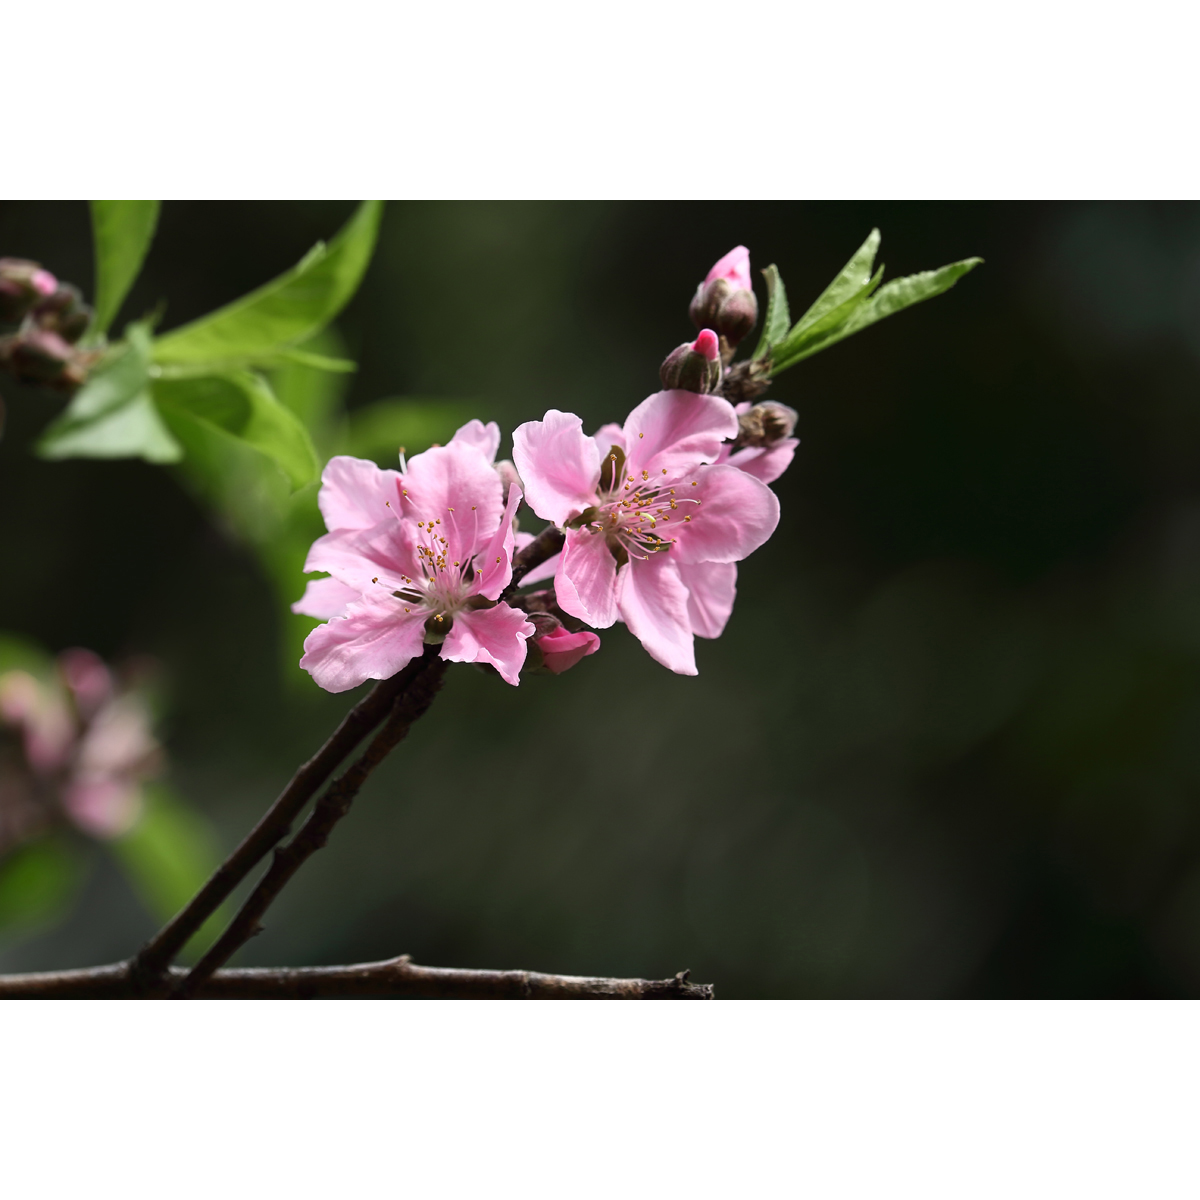 原创高清花卉摄影 - 桃花/普通粉红品种(1张) 高分辨率壁纸图片